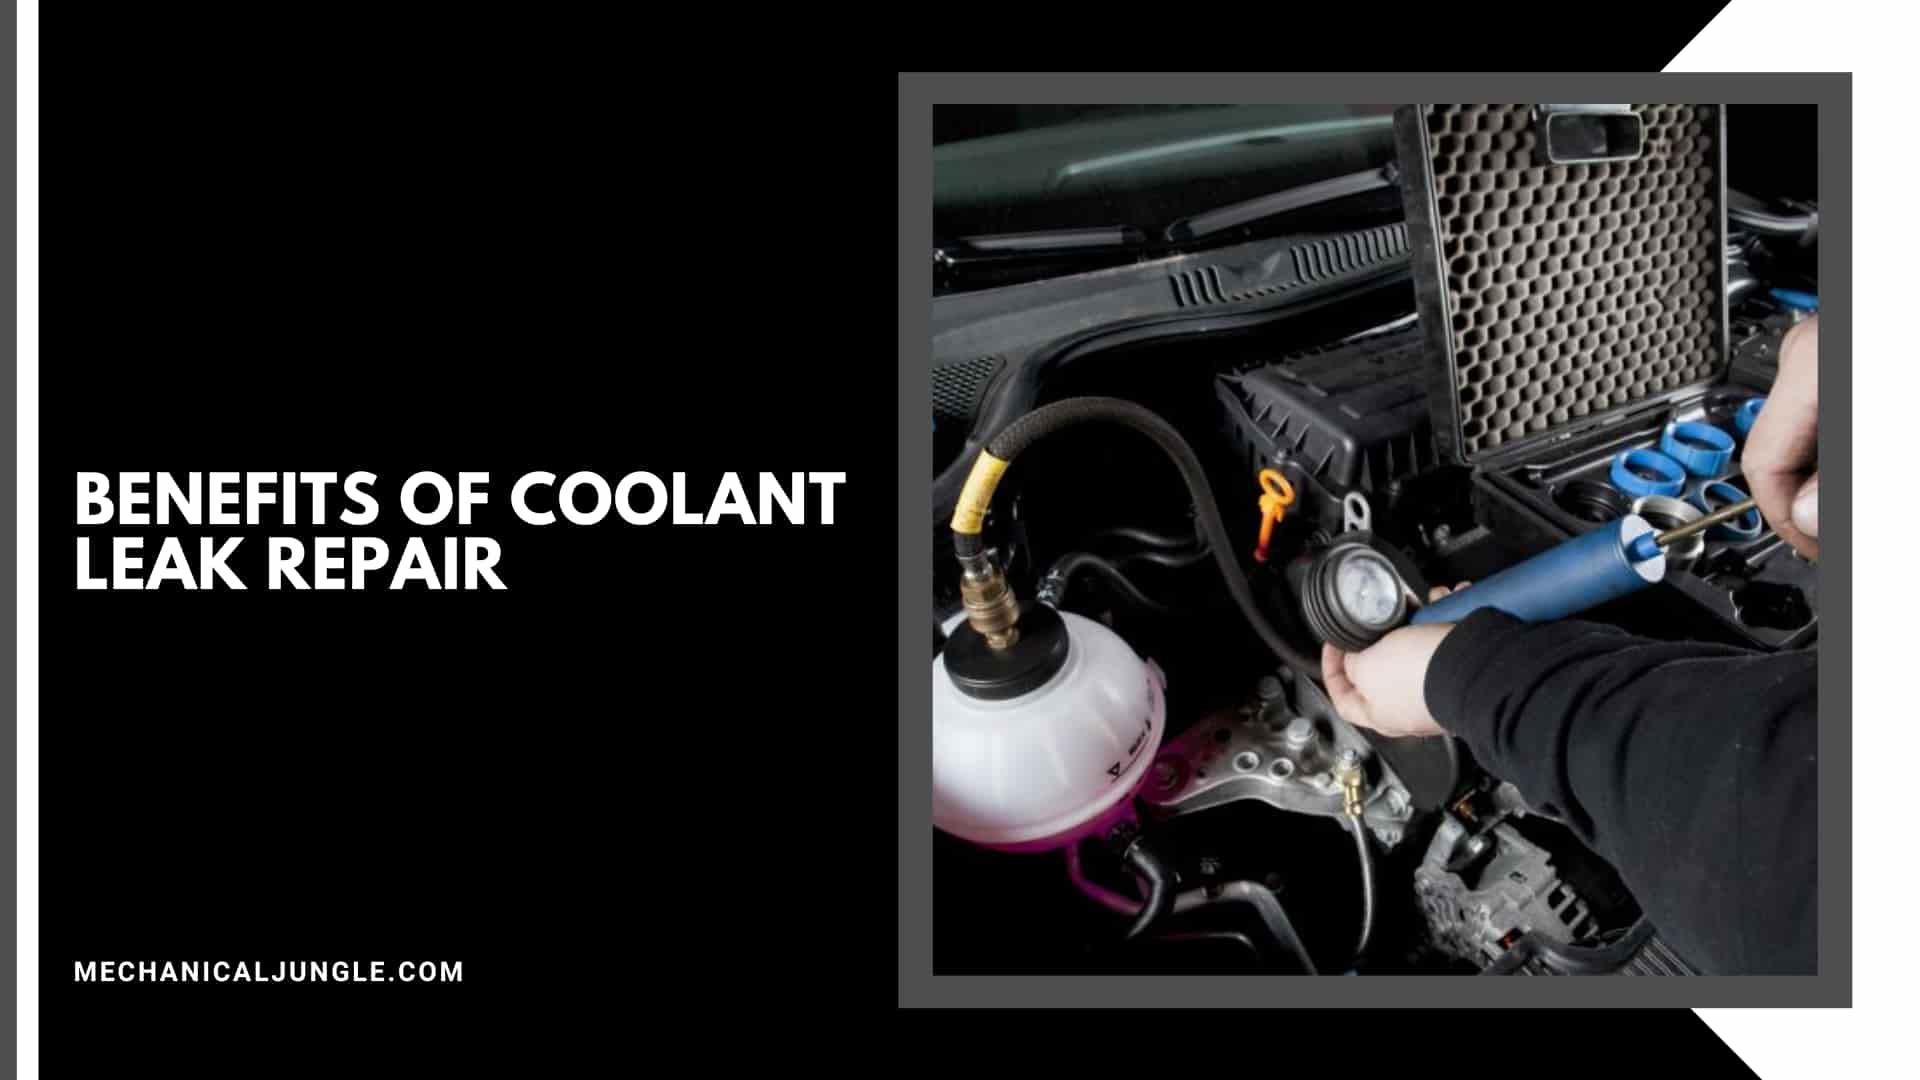 Benefits of Coolant Leak Repair